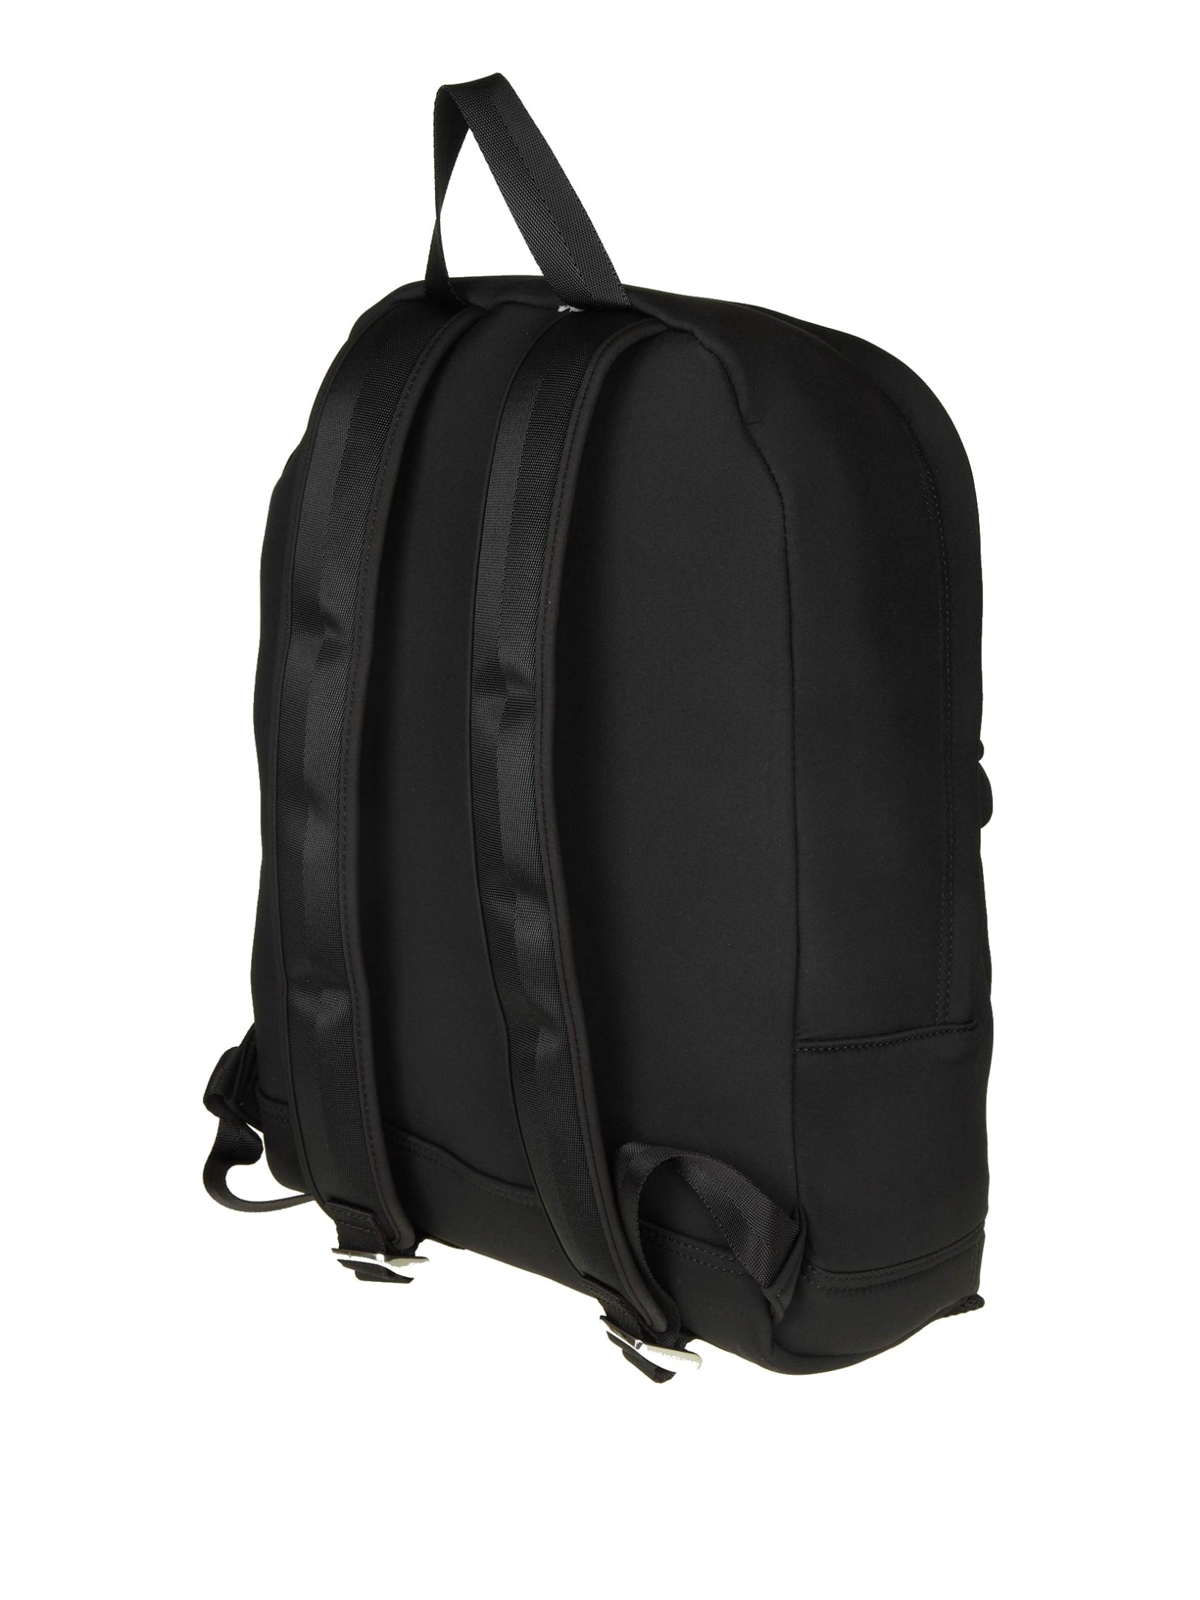 Backpacks Kenzo - Tiger large black neoprene backpack - F765SF300F2199